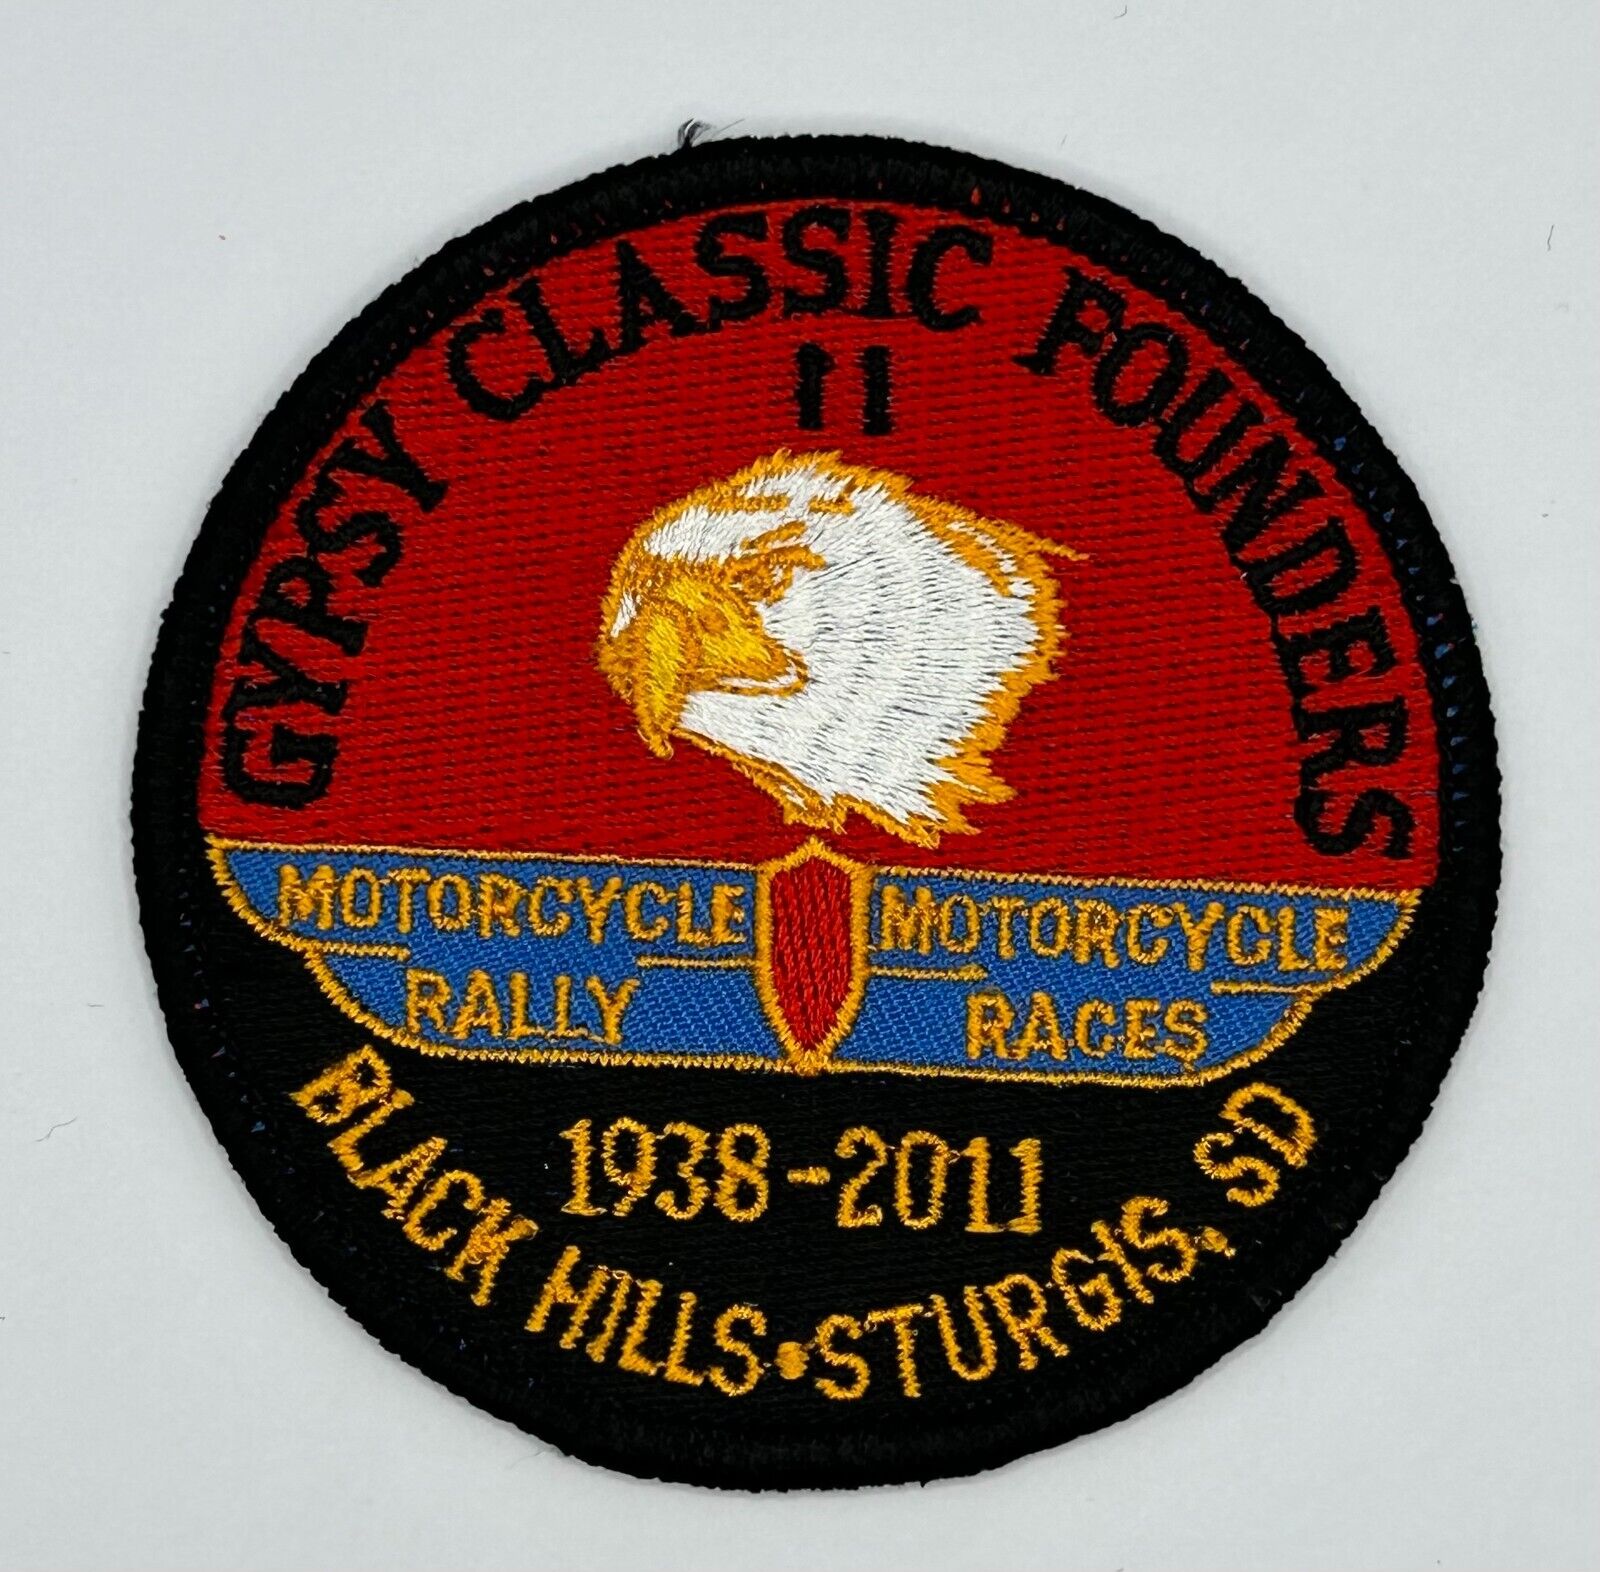 MR ALE Patch 2011 Sturgis South Dakota 1938-2011 Gypsy Classic Founders P71